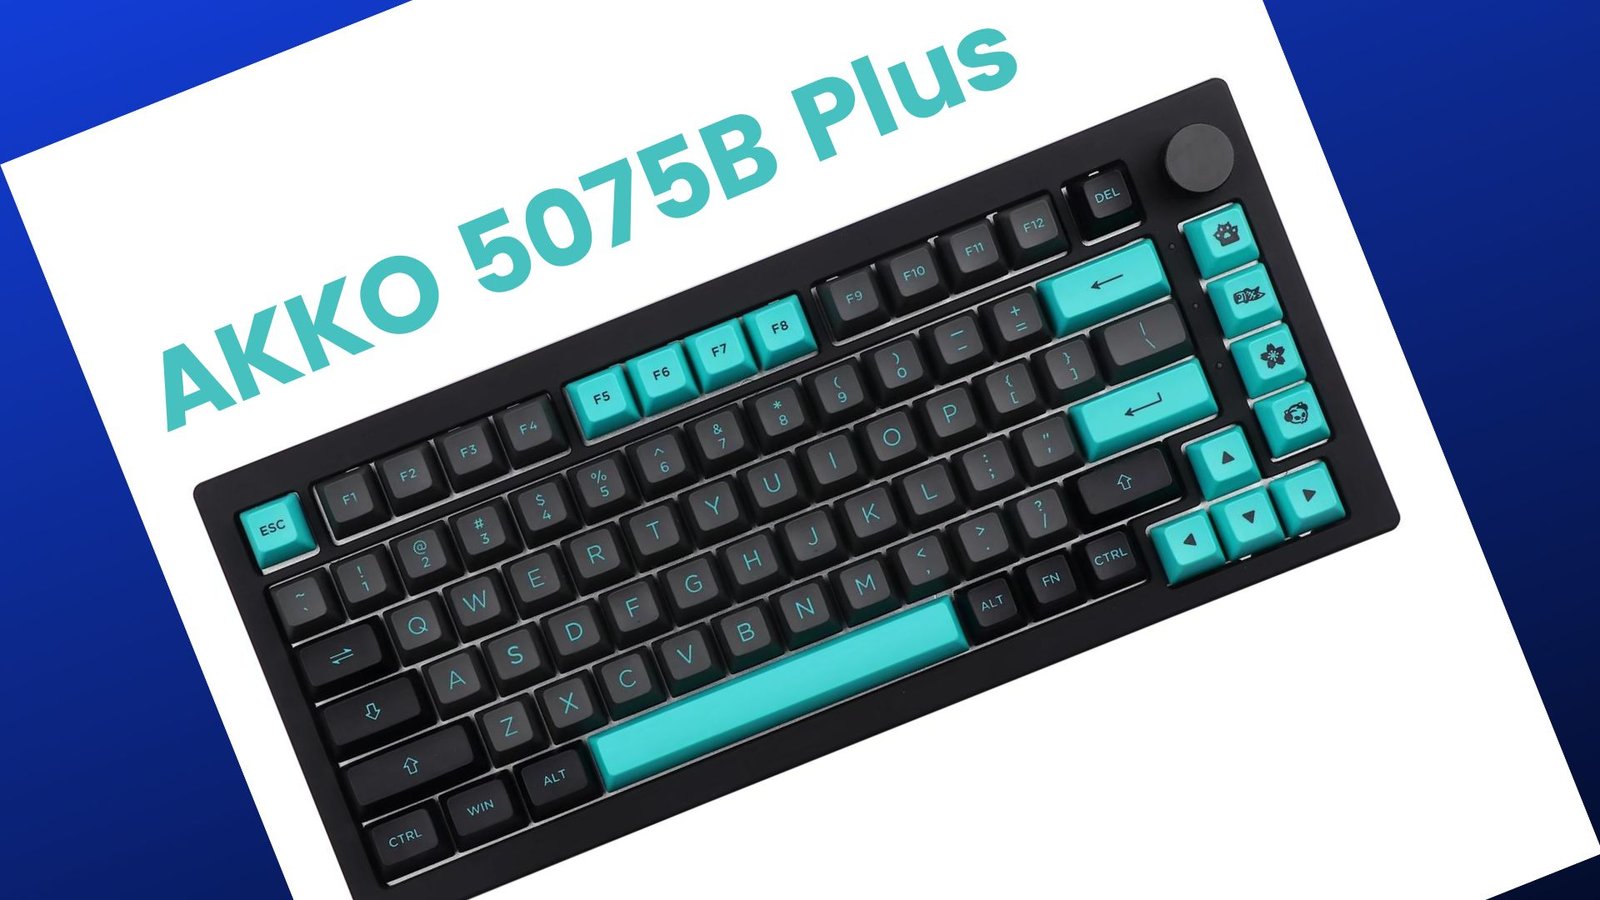 Epomaker AKKO 5075B Plus Mechanical Gaming Keyboard